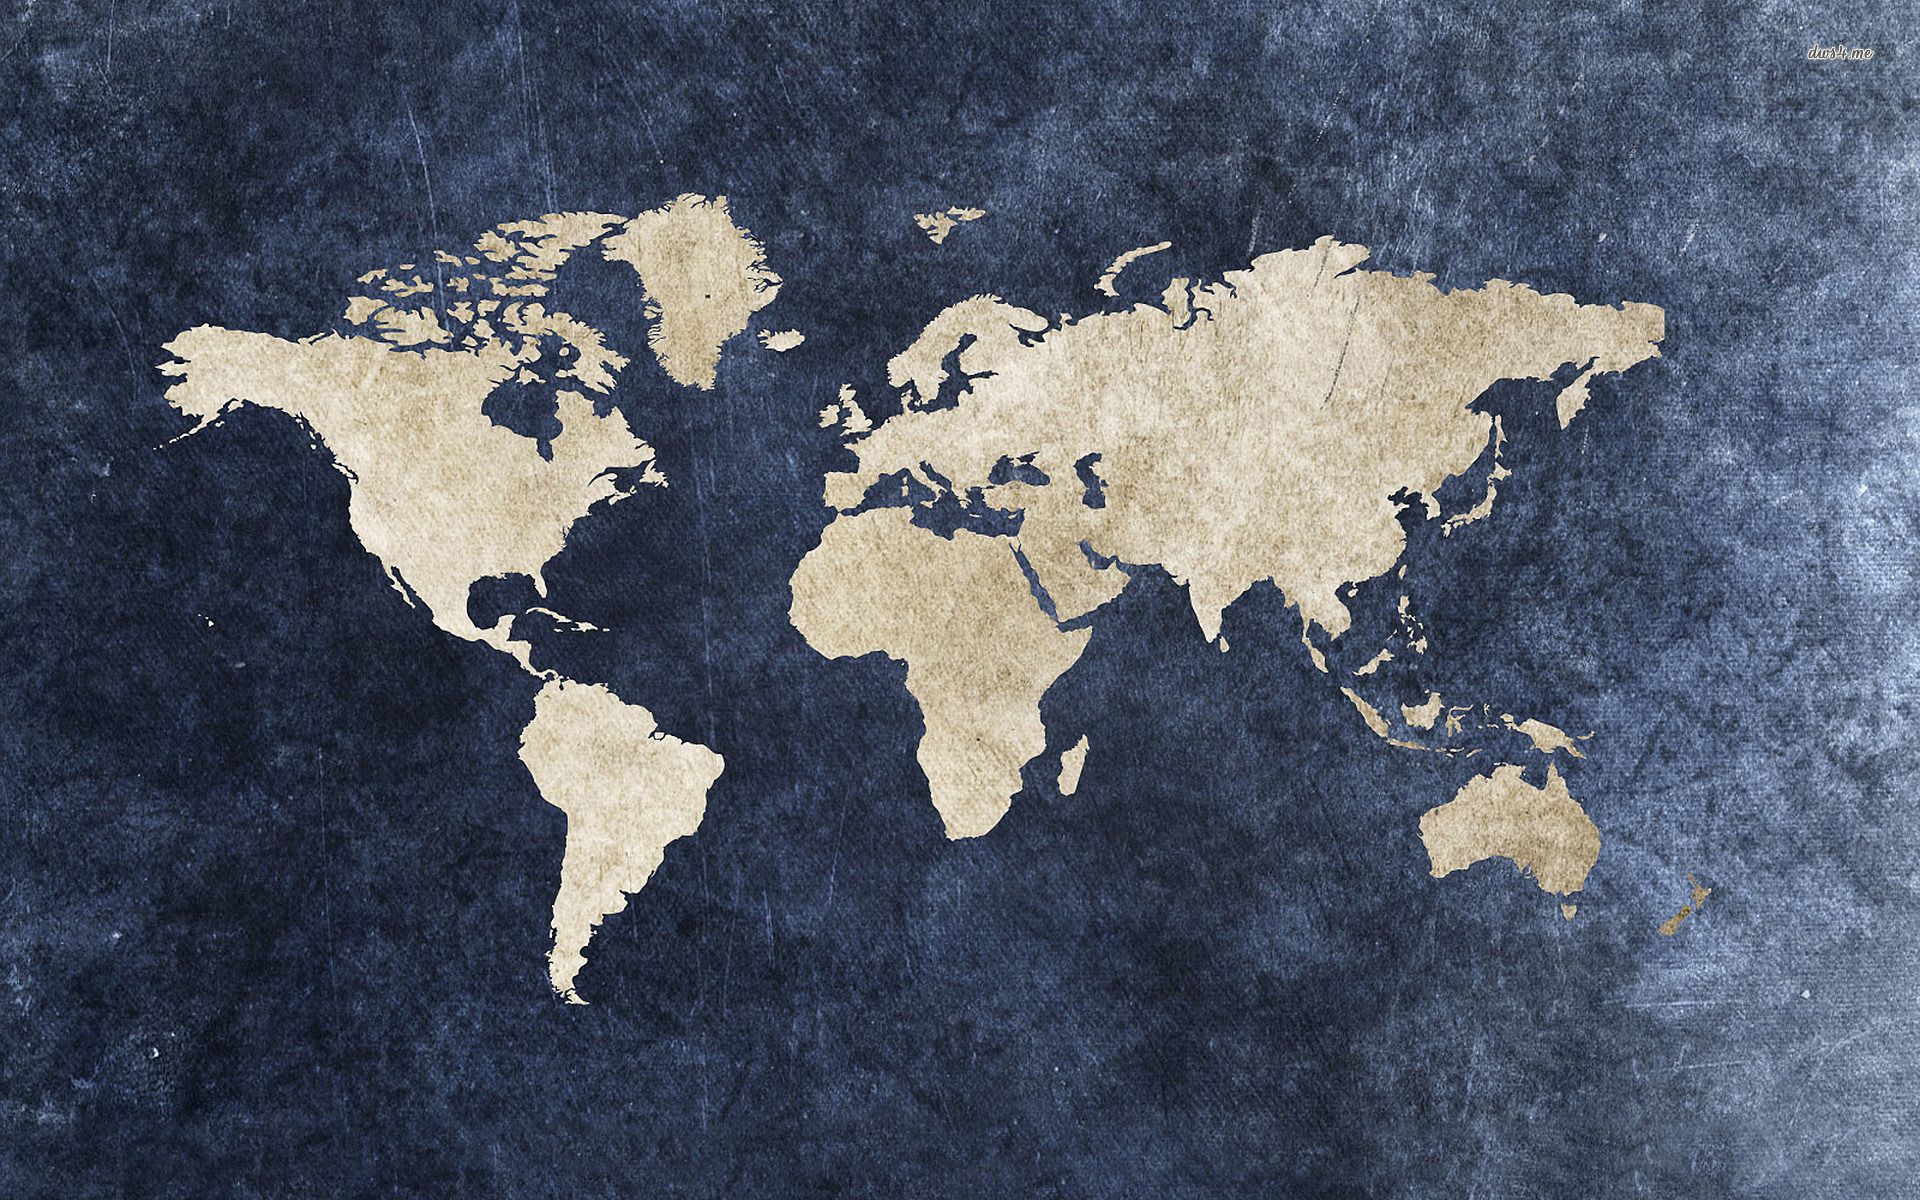 Grungy world map wallpaper - Digital Art wallpapers -